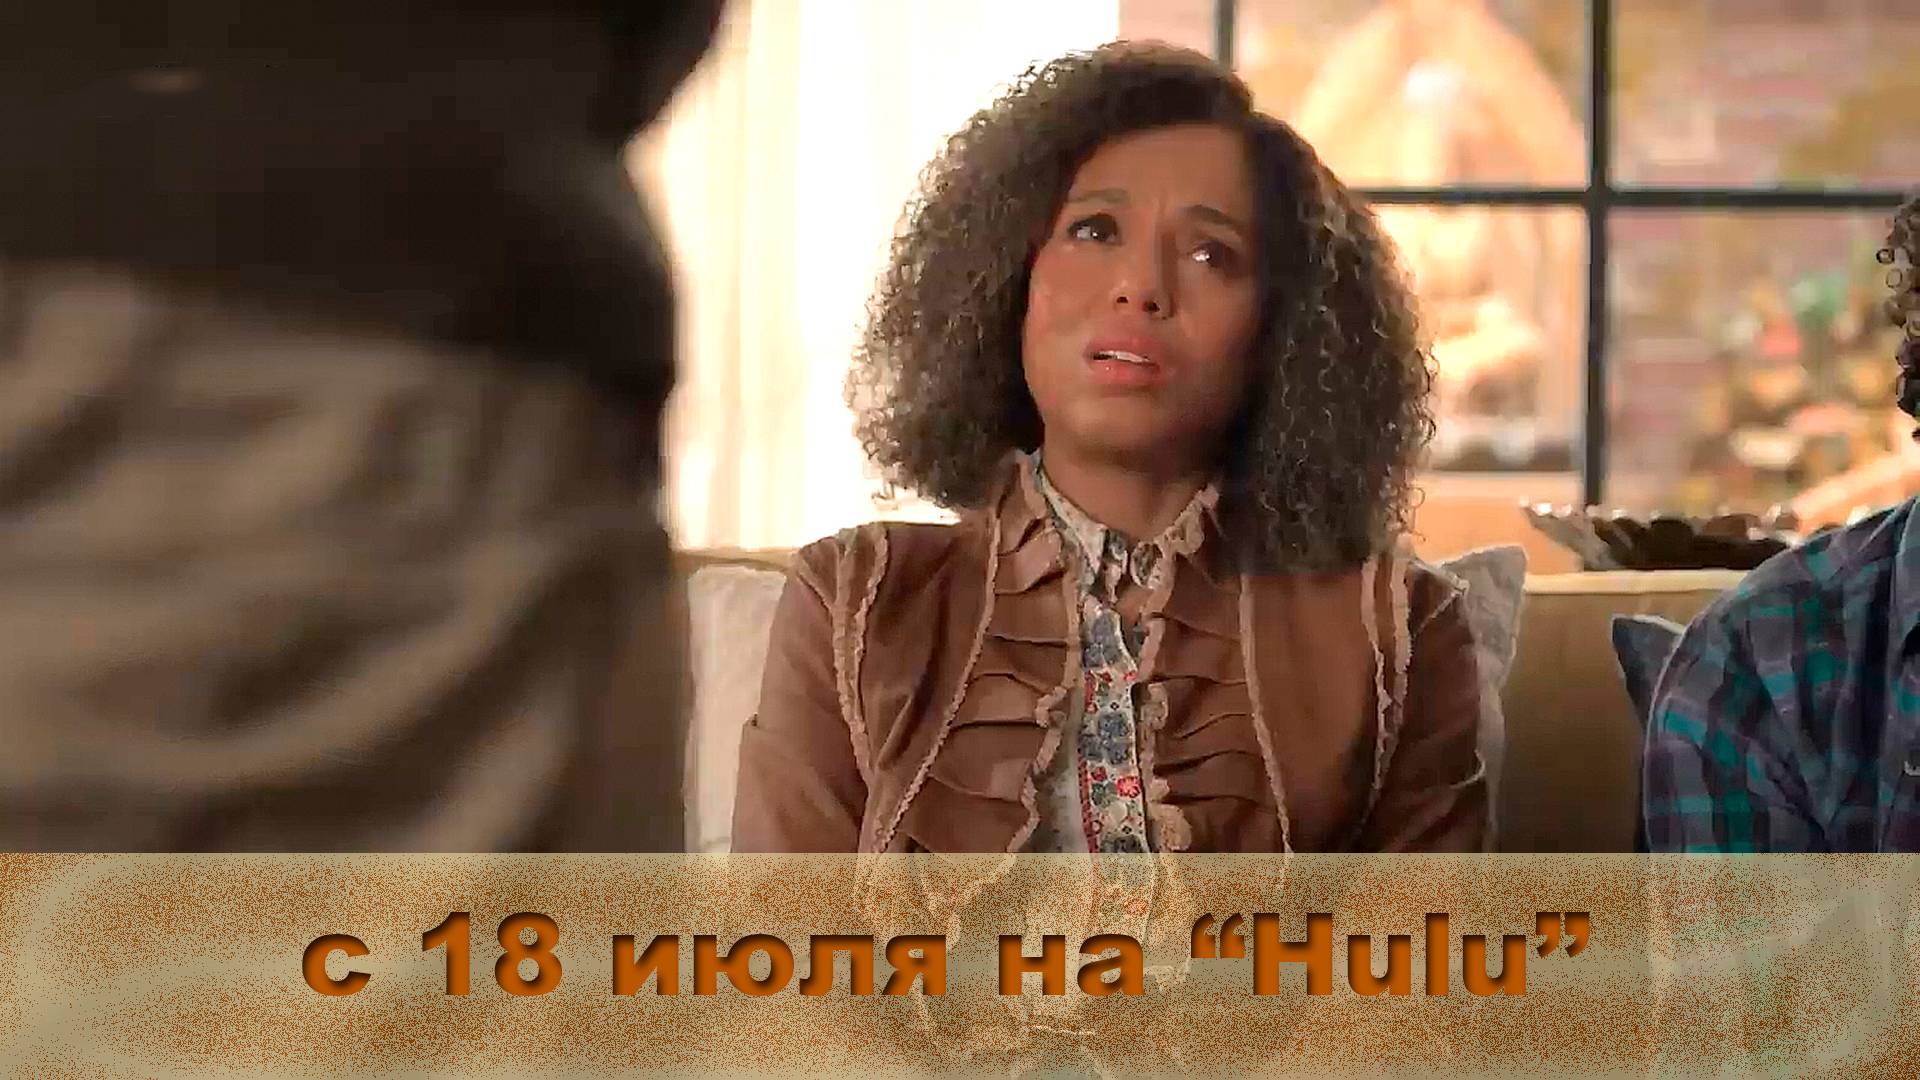 ≪Снова на воле≫: премьера 2 сезона - 18 июля 2024 г. на "Hulu" (трейлер)